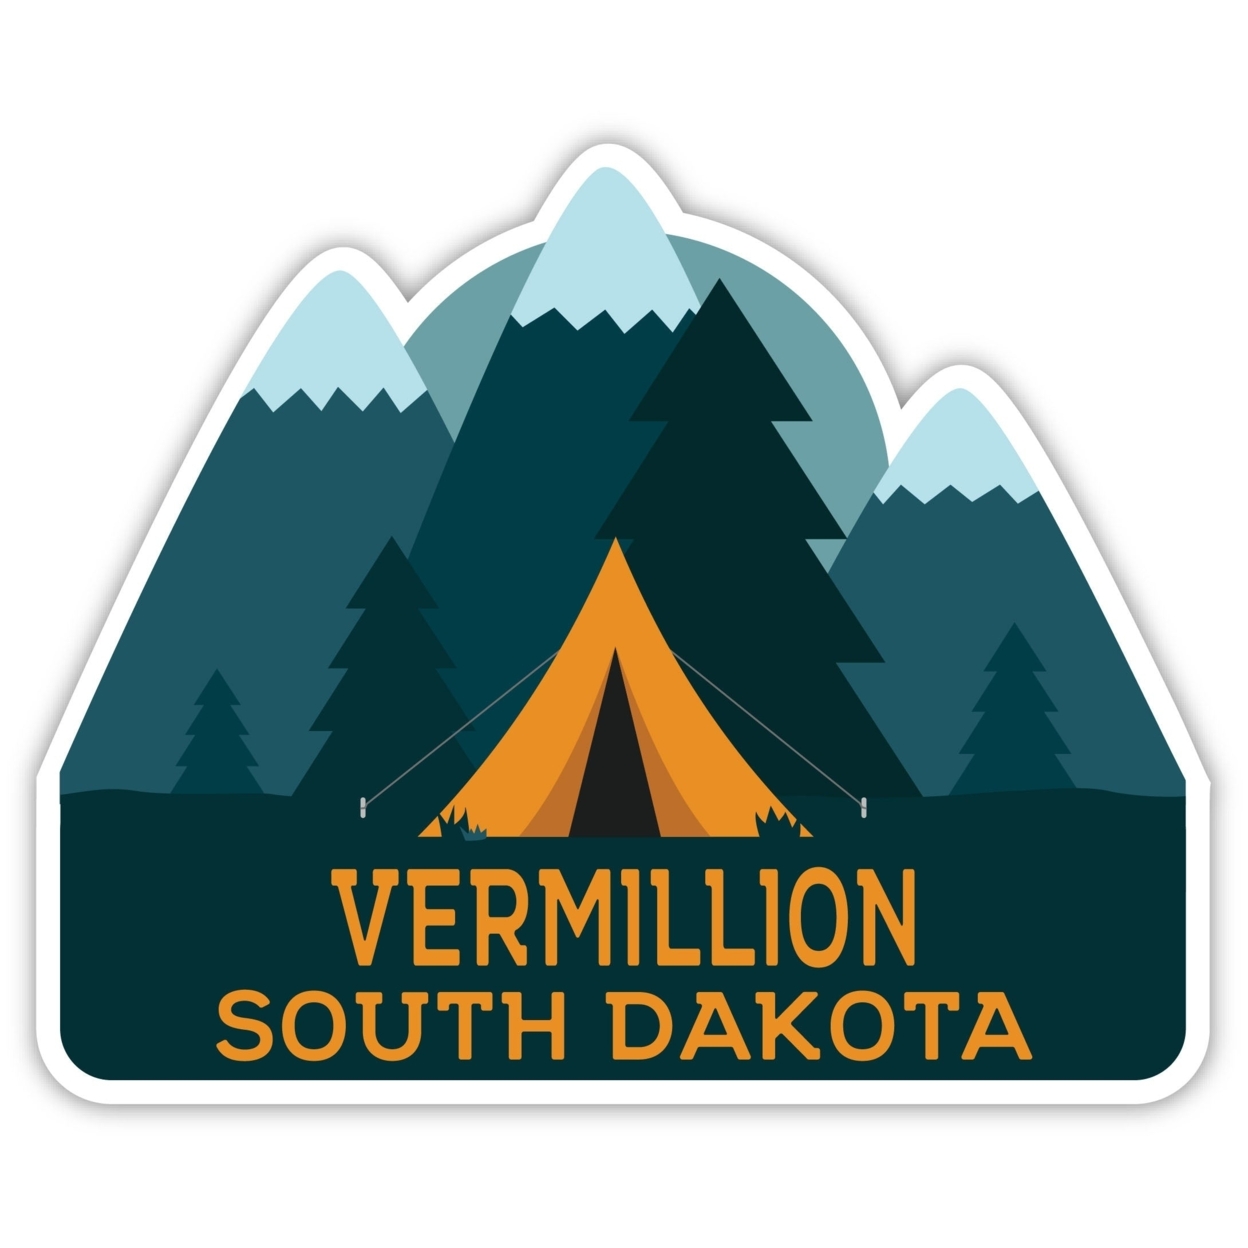 Vermillion South Dakota Souvenir Decorative Stickers (Choose Theme And Size) - Single Unit, 4-Inch, Tent